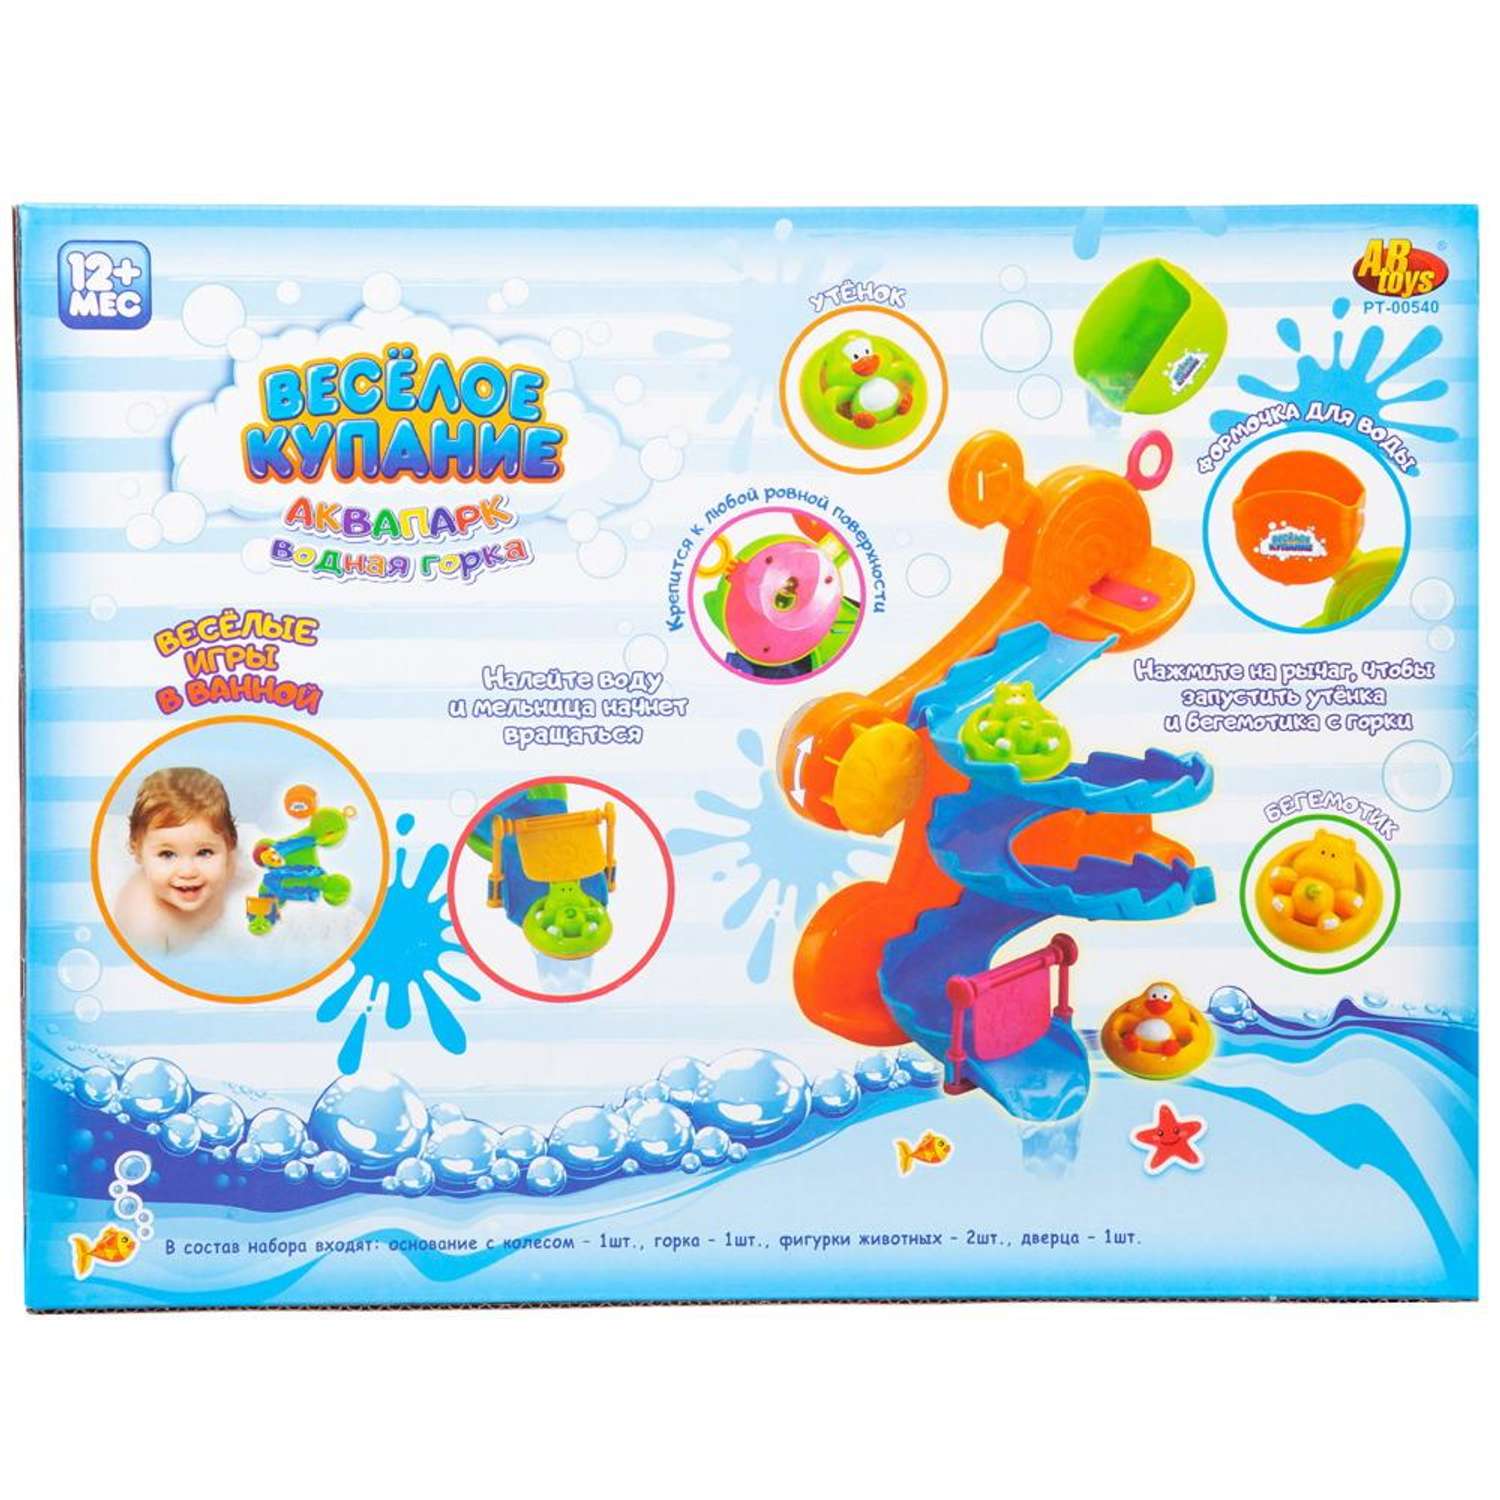 Набор игрушек для ванной ABTOYS Веселое купание горка серпантин оранжевая с 2 животными на кругах - фото 2